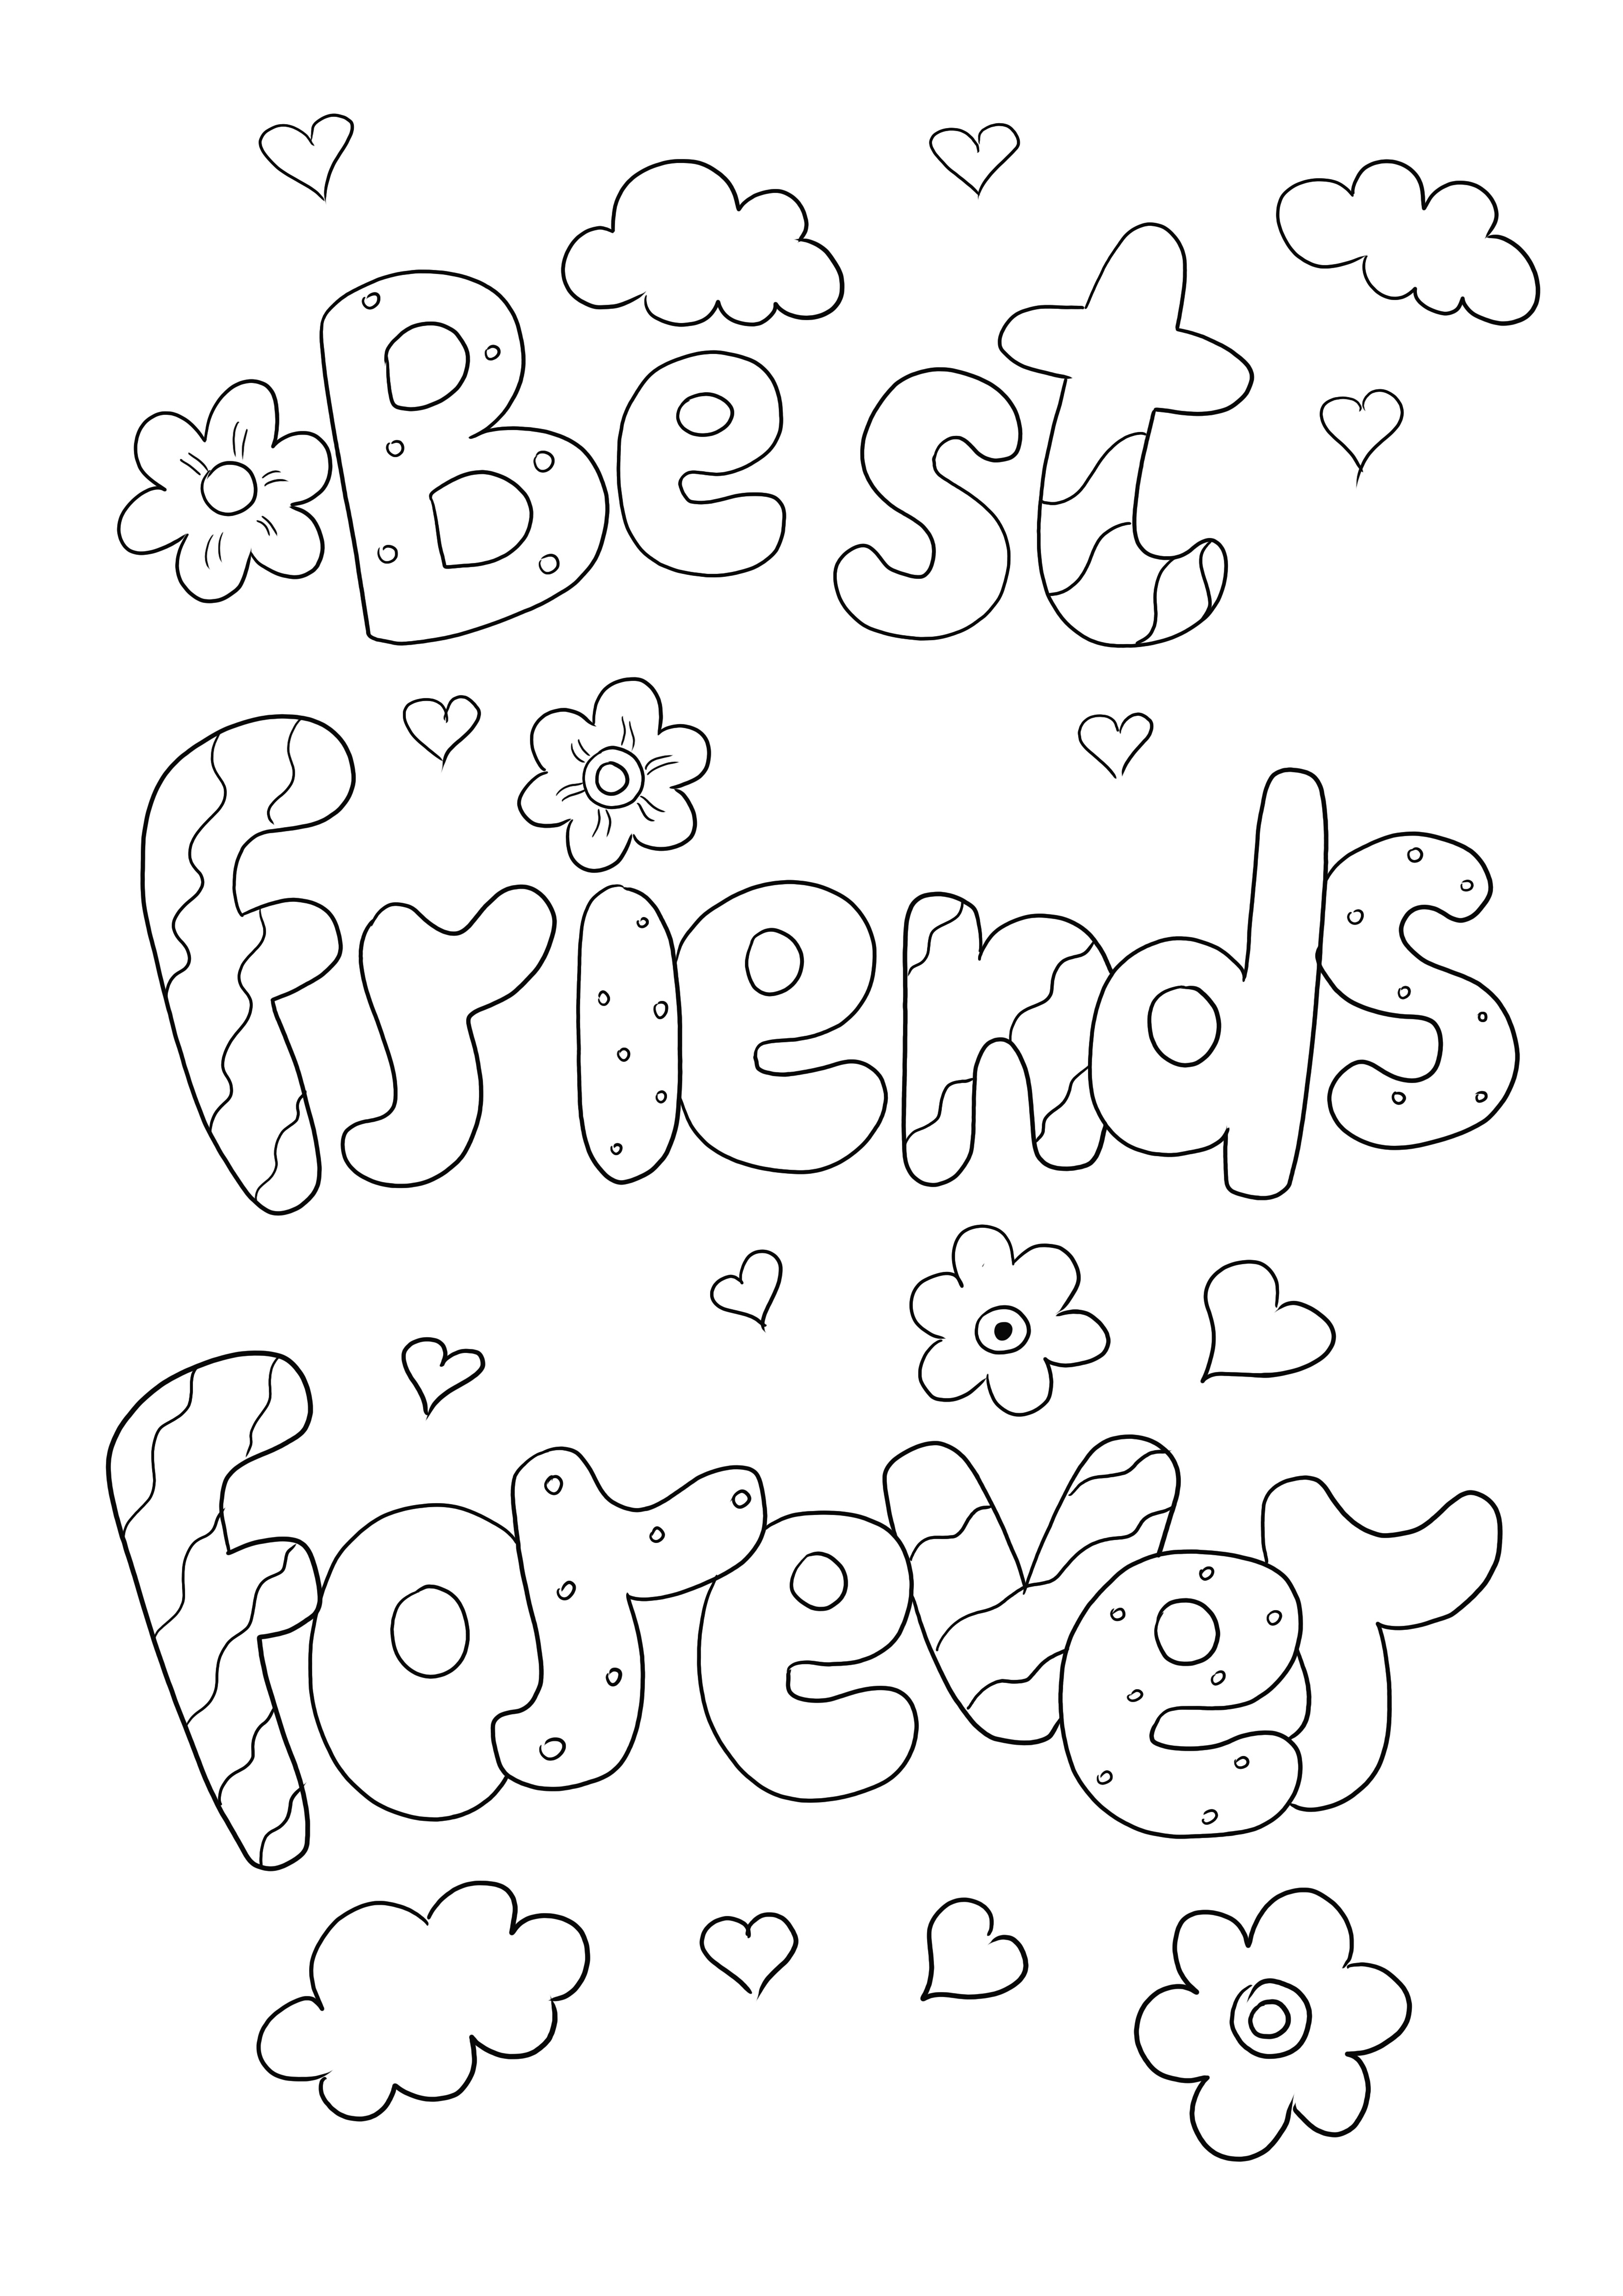 Melhores amigos para sempre colorir gratuitamente para download ou impressão direta